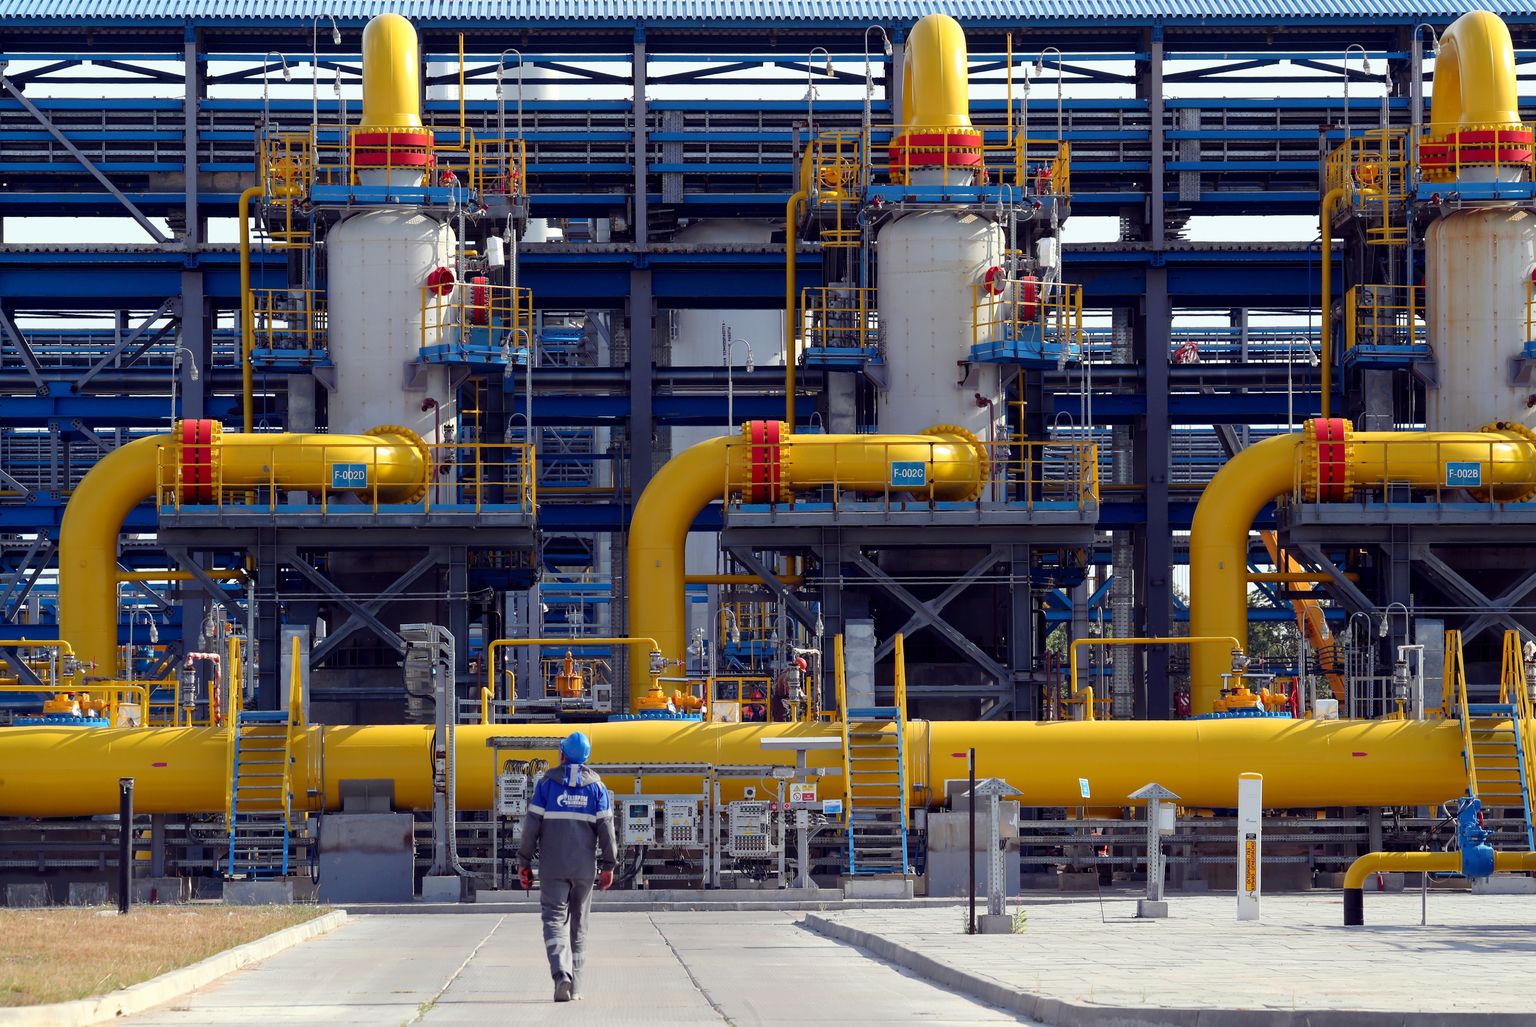 Gazpromi poolt opereeritav Slavjanskaja jaam, mis pidi olema Nord Stream 2 gaasijuhtme alguspunktiks.